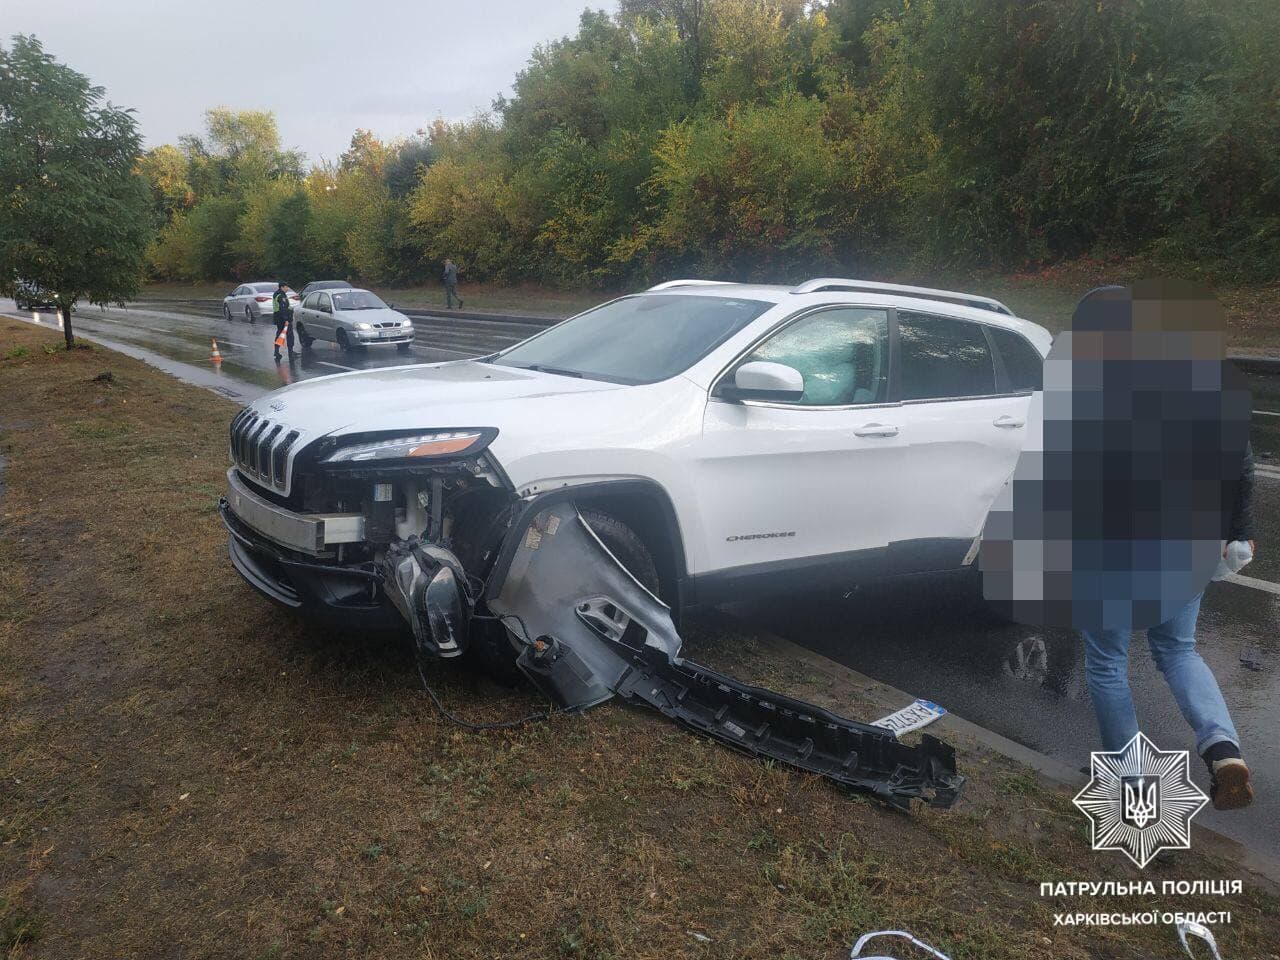 ДТП Харьков: Разбиты четыре легковых авто в аварии на проспекте Тракторостроителей - Chevrolet, Daewoo, Jeep и Audi